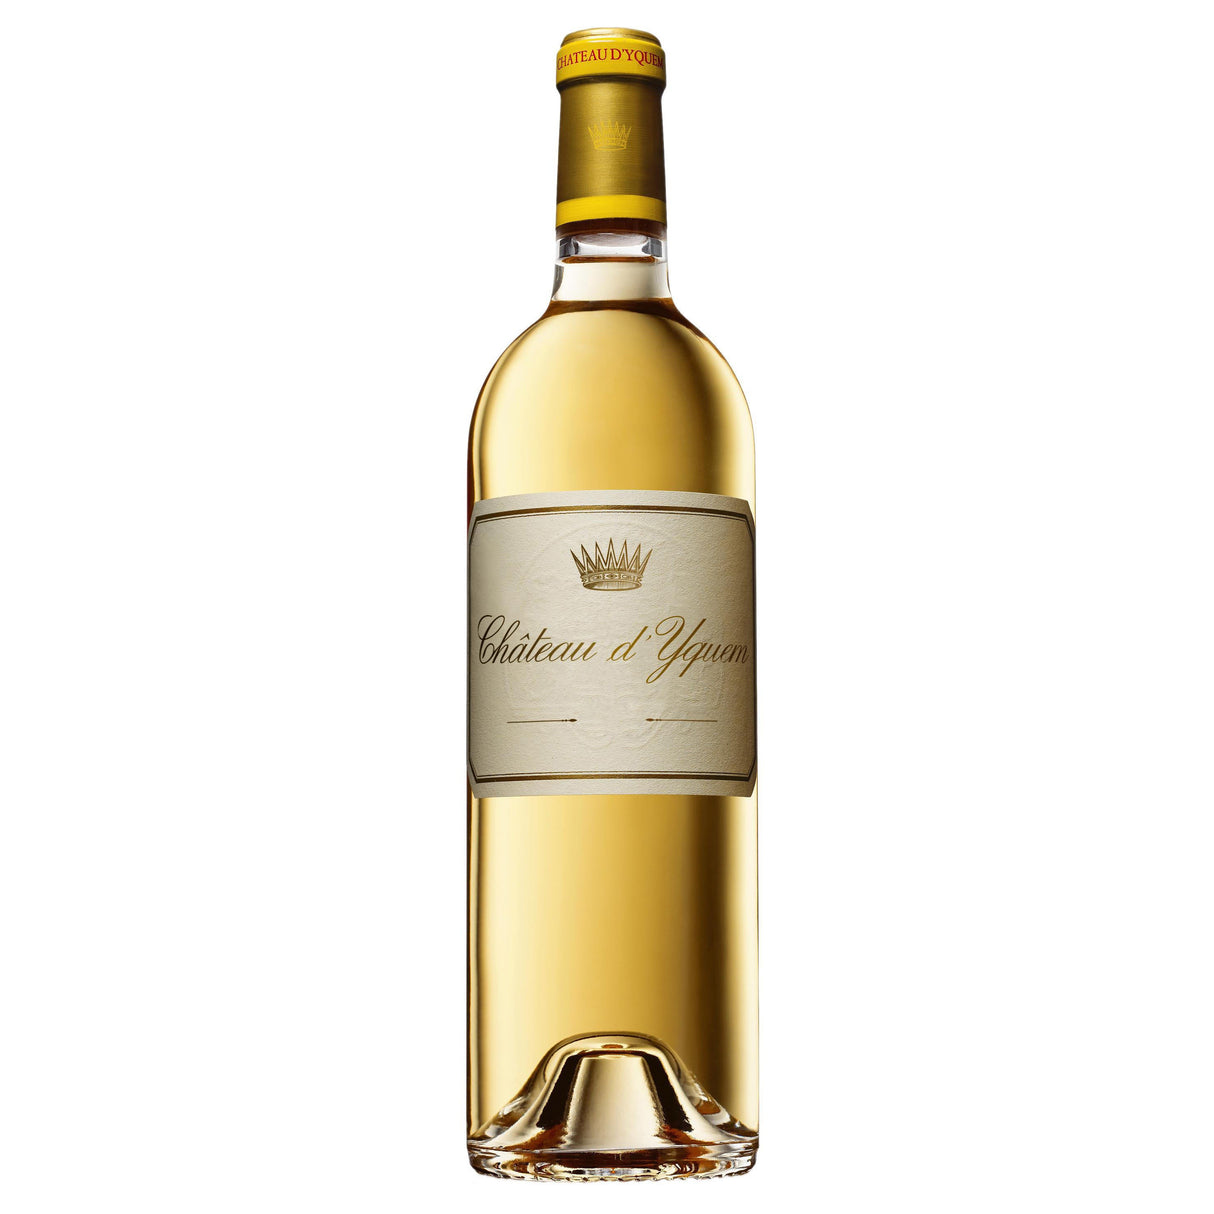 Chateau d’Yquem, 1er Supérieur G.C.C, 1855 Sauternes 9L 2019-Dessert, Sherry & Port-World Wine